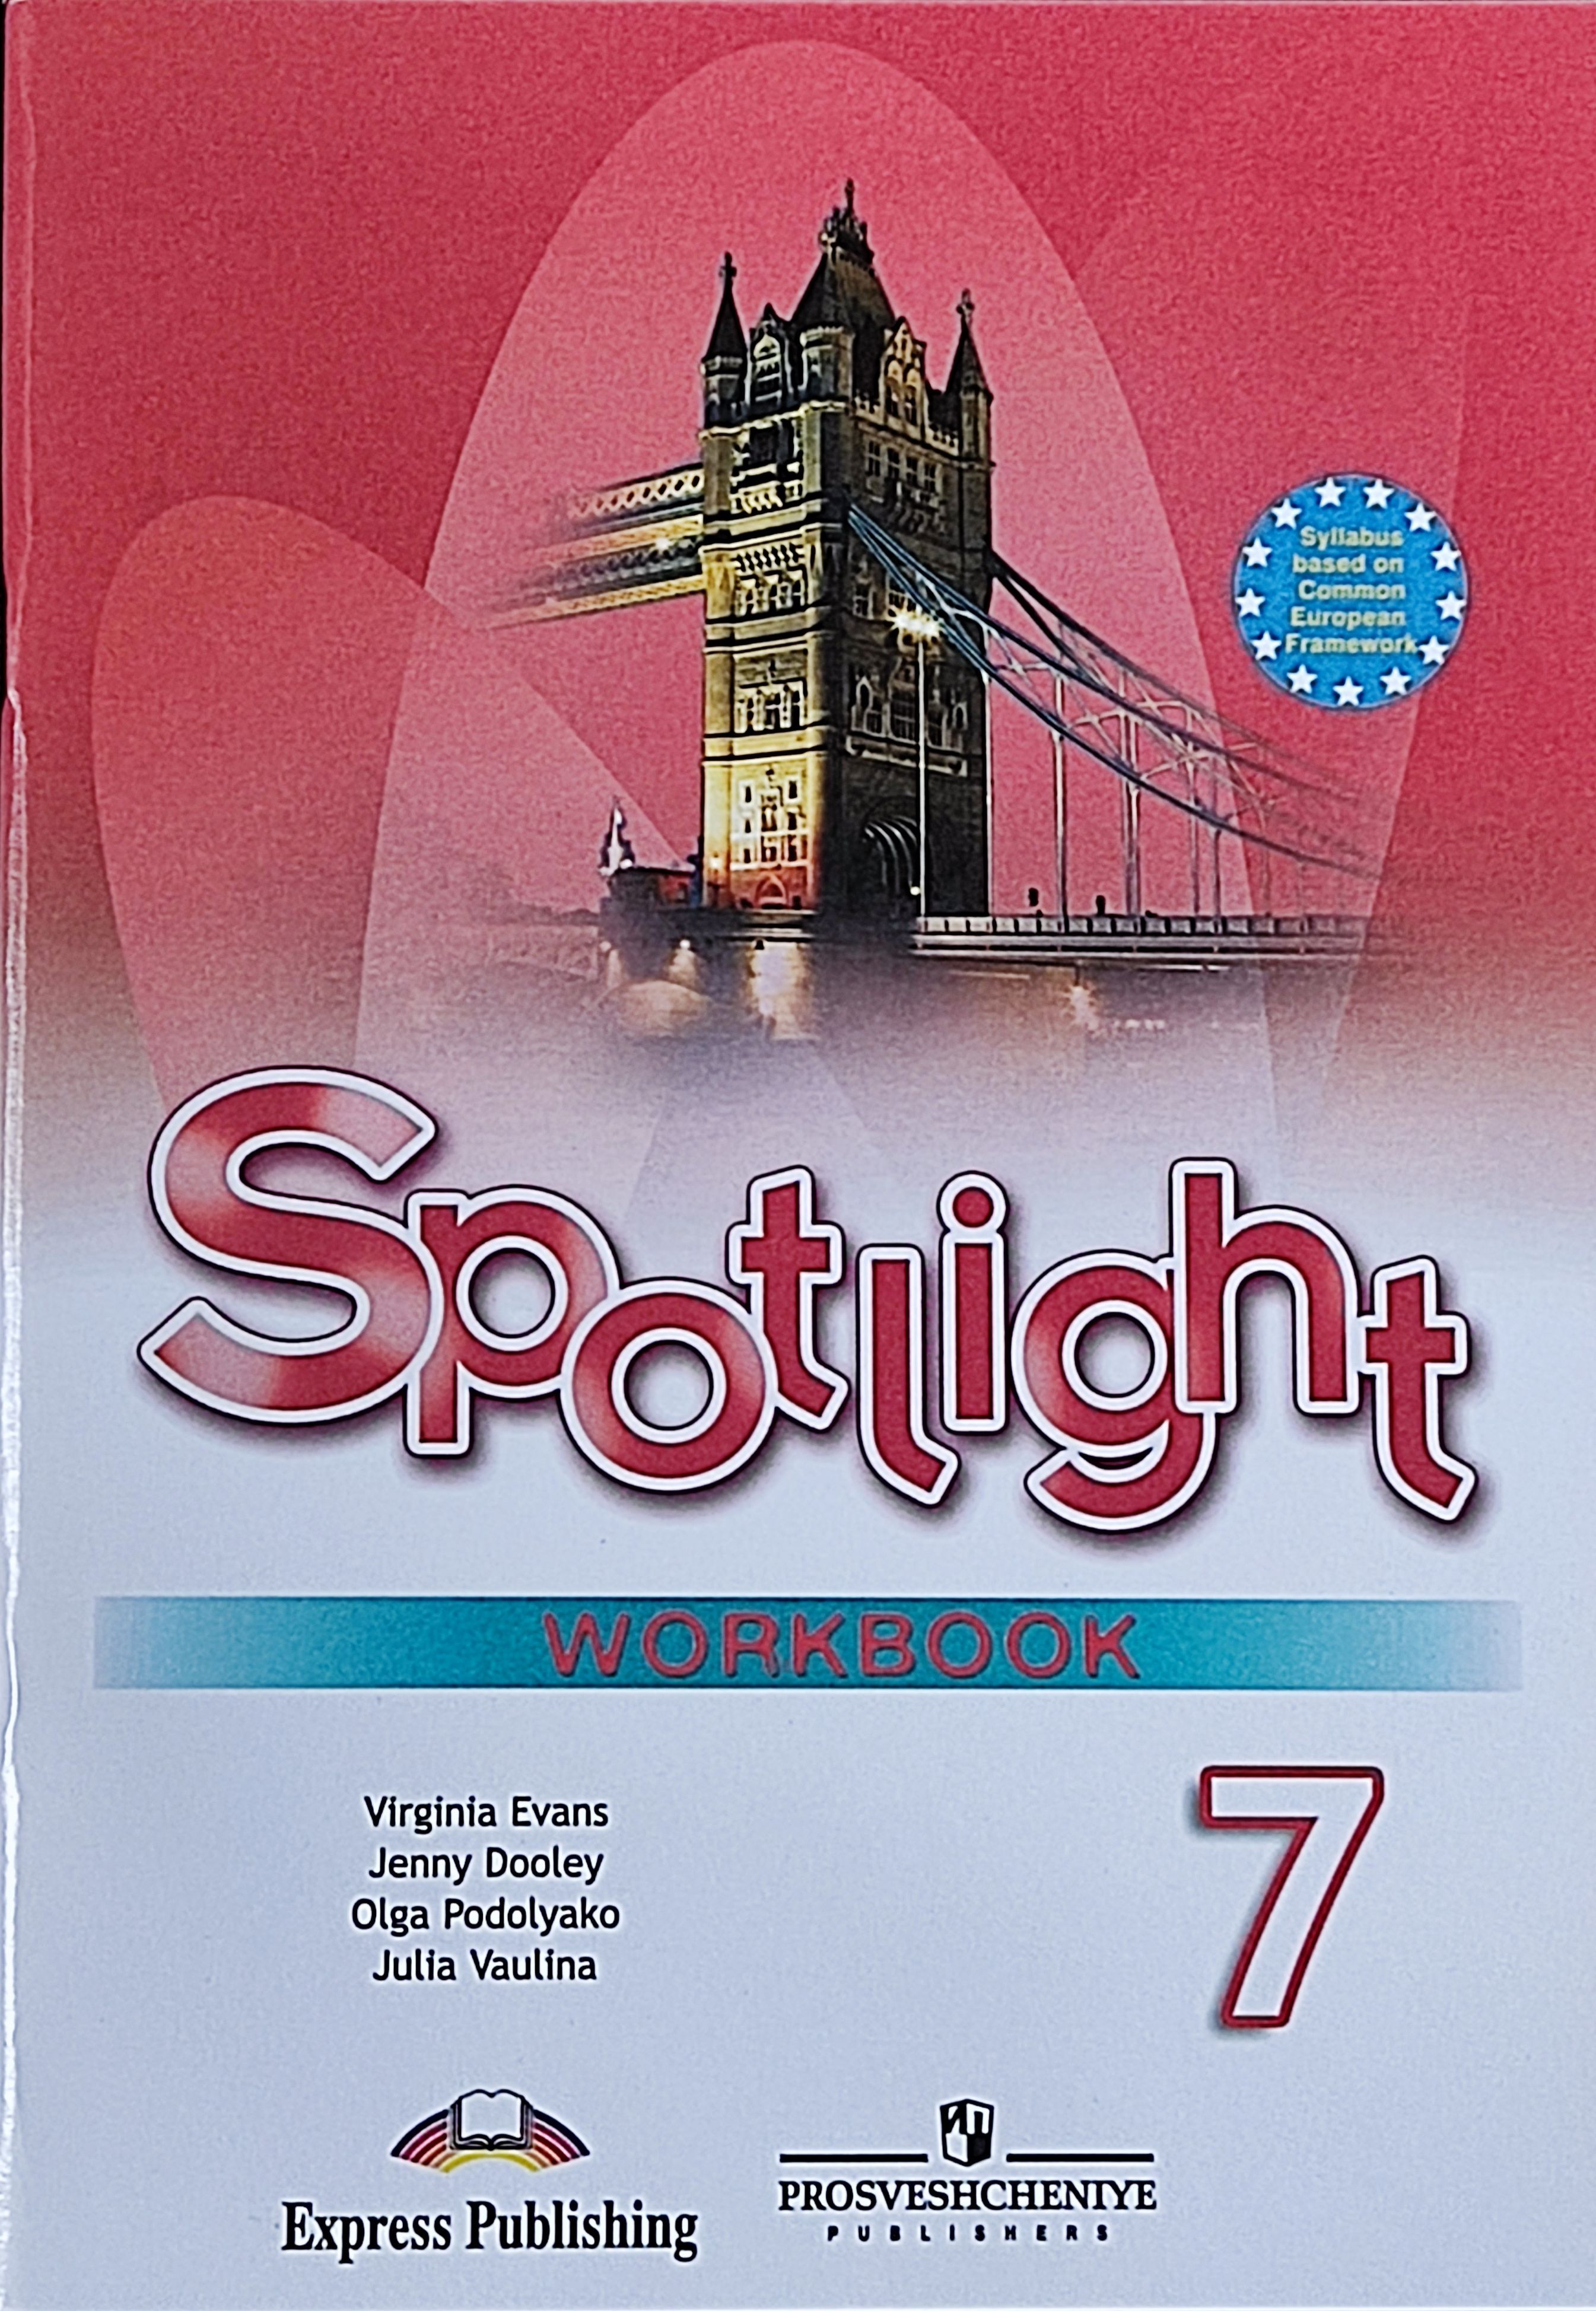 Английский язык 5 класс страница 87 ваулина. Английский язык 5 класс Spotlight Workbook. Рабочая тетрадь по английскому языку 5 класс Spotlight. Spotlight 5 Workbook английский язык Эванс. Английский язык 9 класс (Spotlight) ваулина ю.е. рабоч тетрадь.